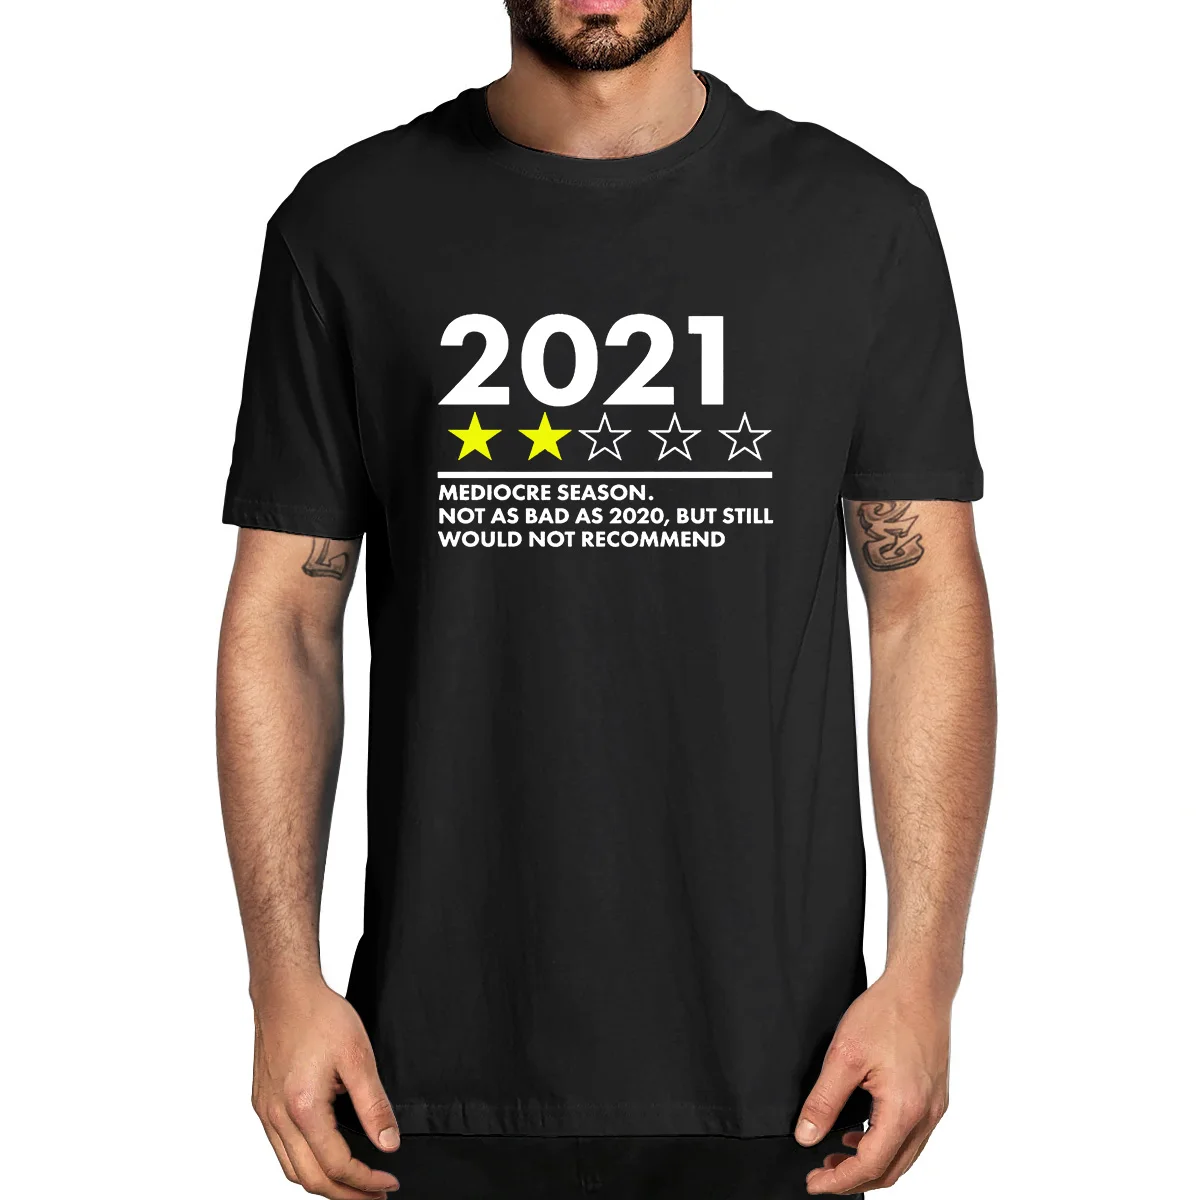 

Сезон 2021 посредственный, не так уж плохо, как 2020, но все равно не буду покупать, Мужская новинка, футболка унисекс, смешной Юмор для женщин и м...